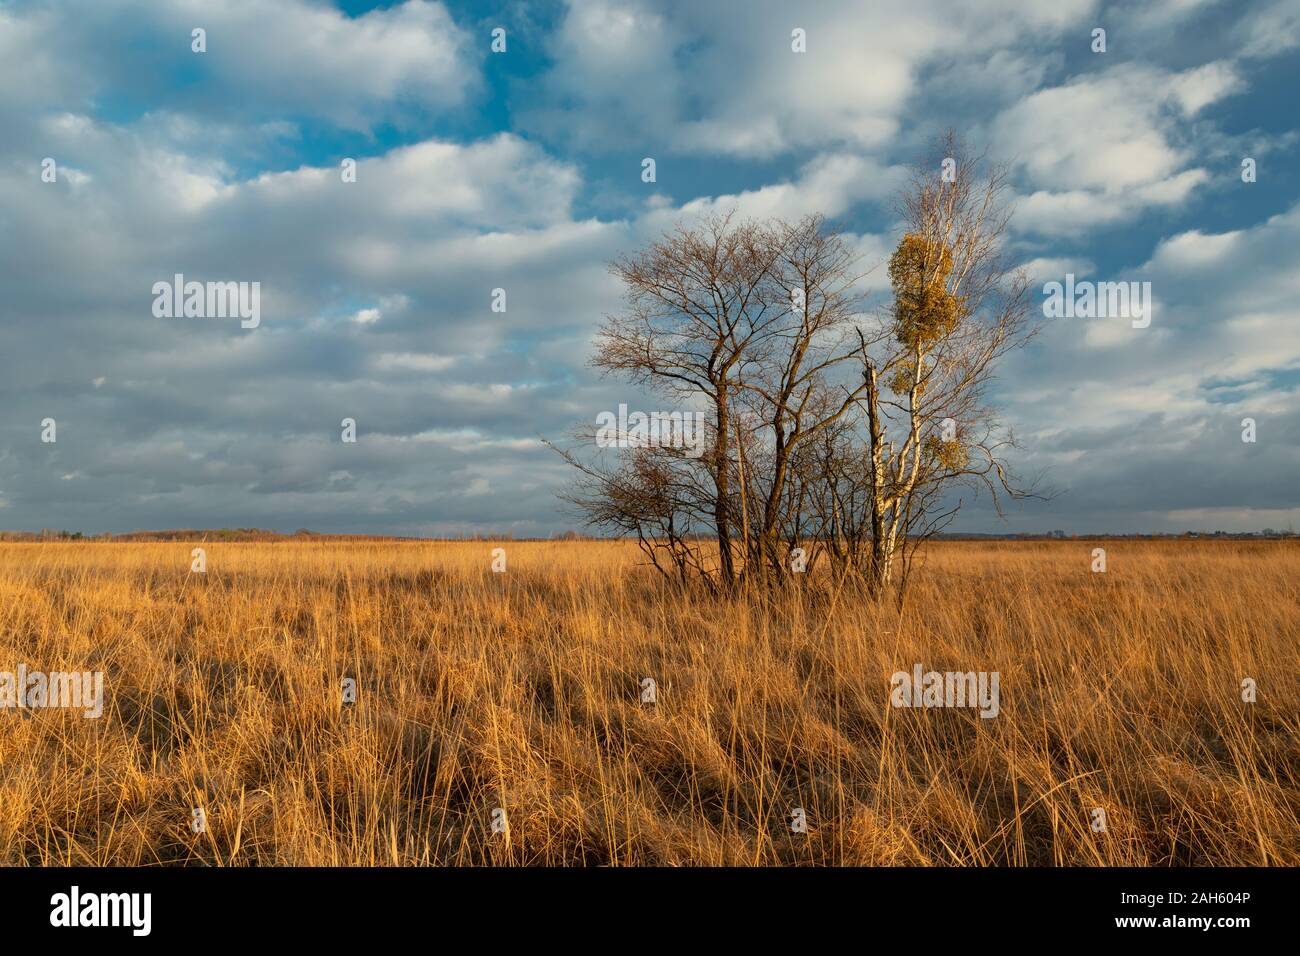 Alte erbe, alberi senza foglie e nuvole bianche sul cielo, palude in Polonia Foto Stock